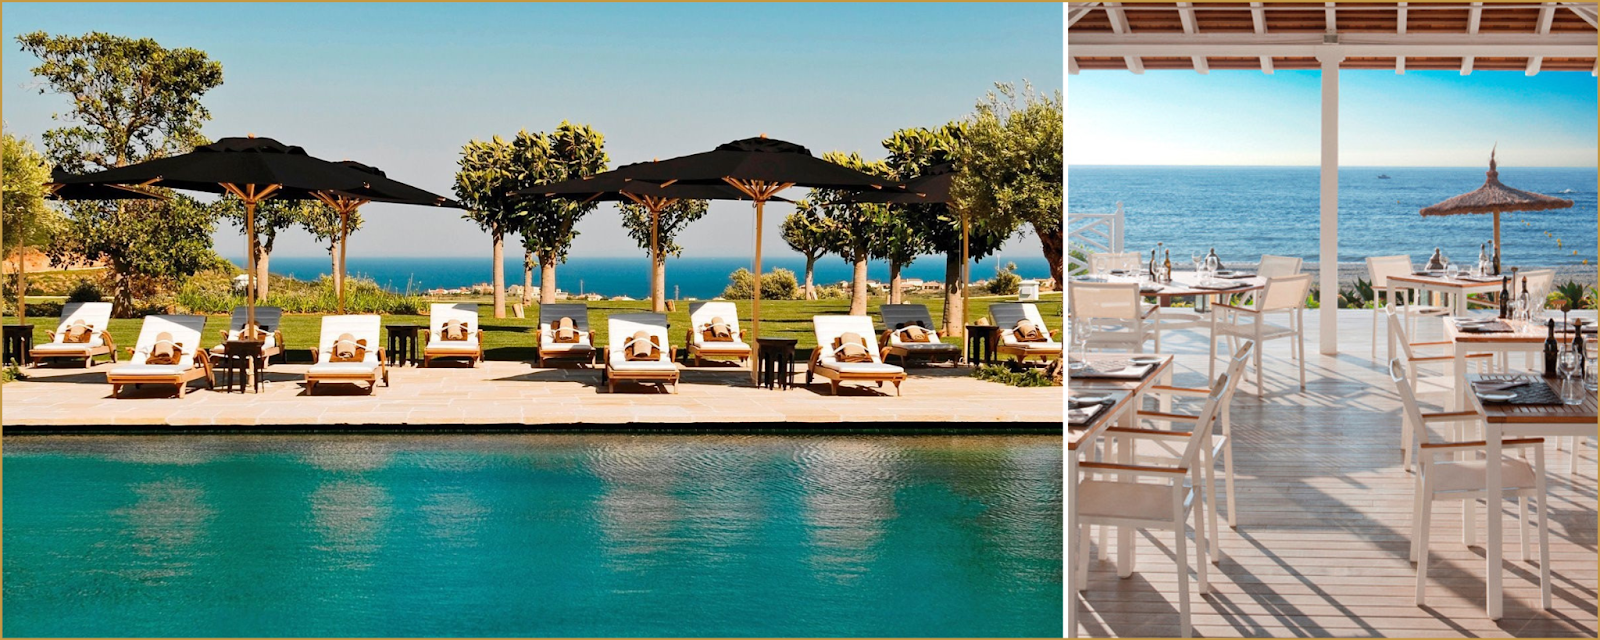 Finca Cortesin Resort strandklubb Hansson Hertzell fastighet i Casares Costa del Sol